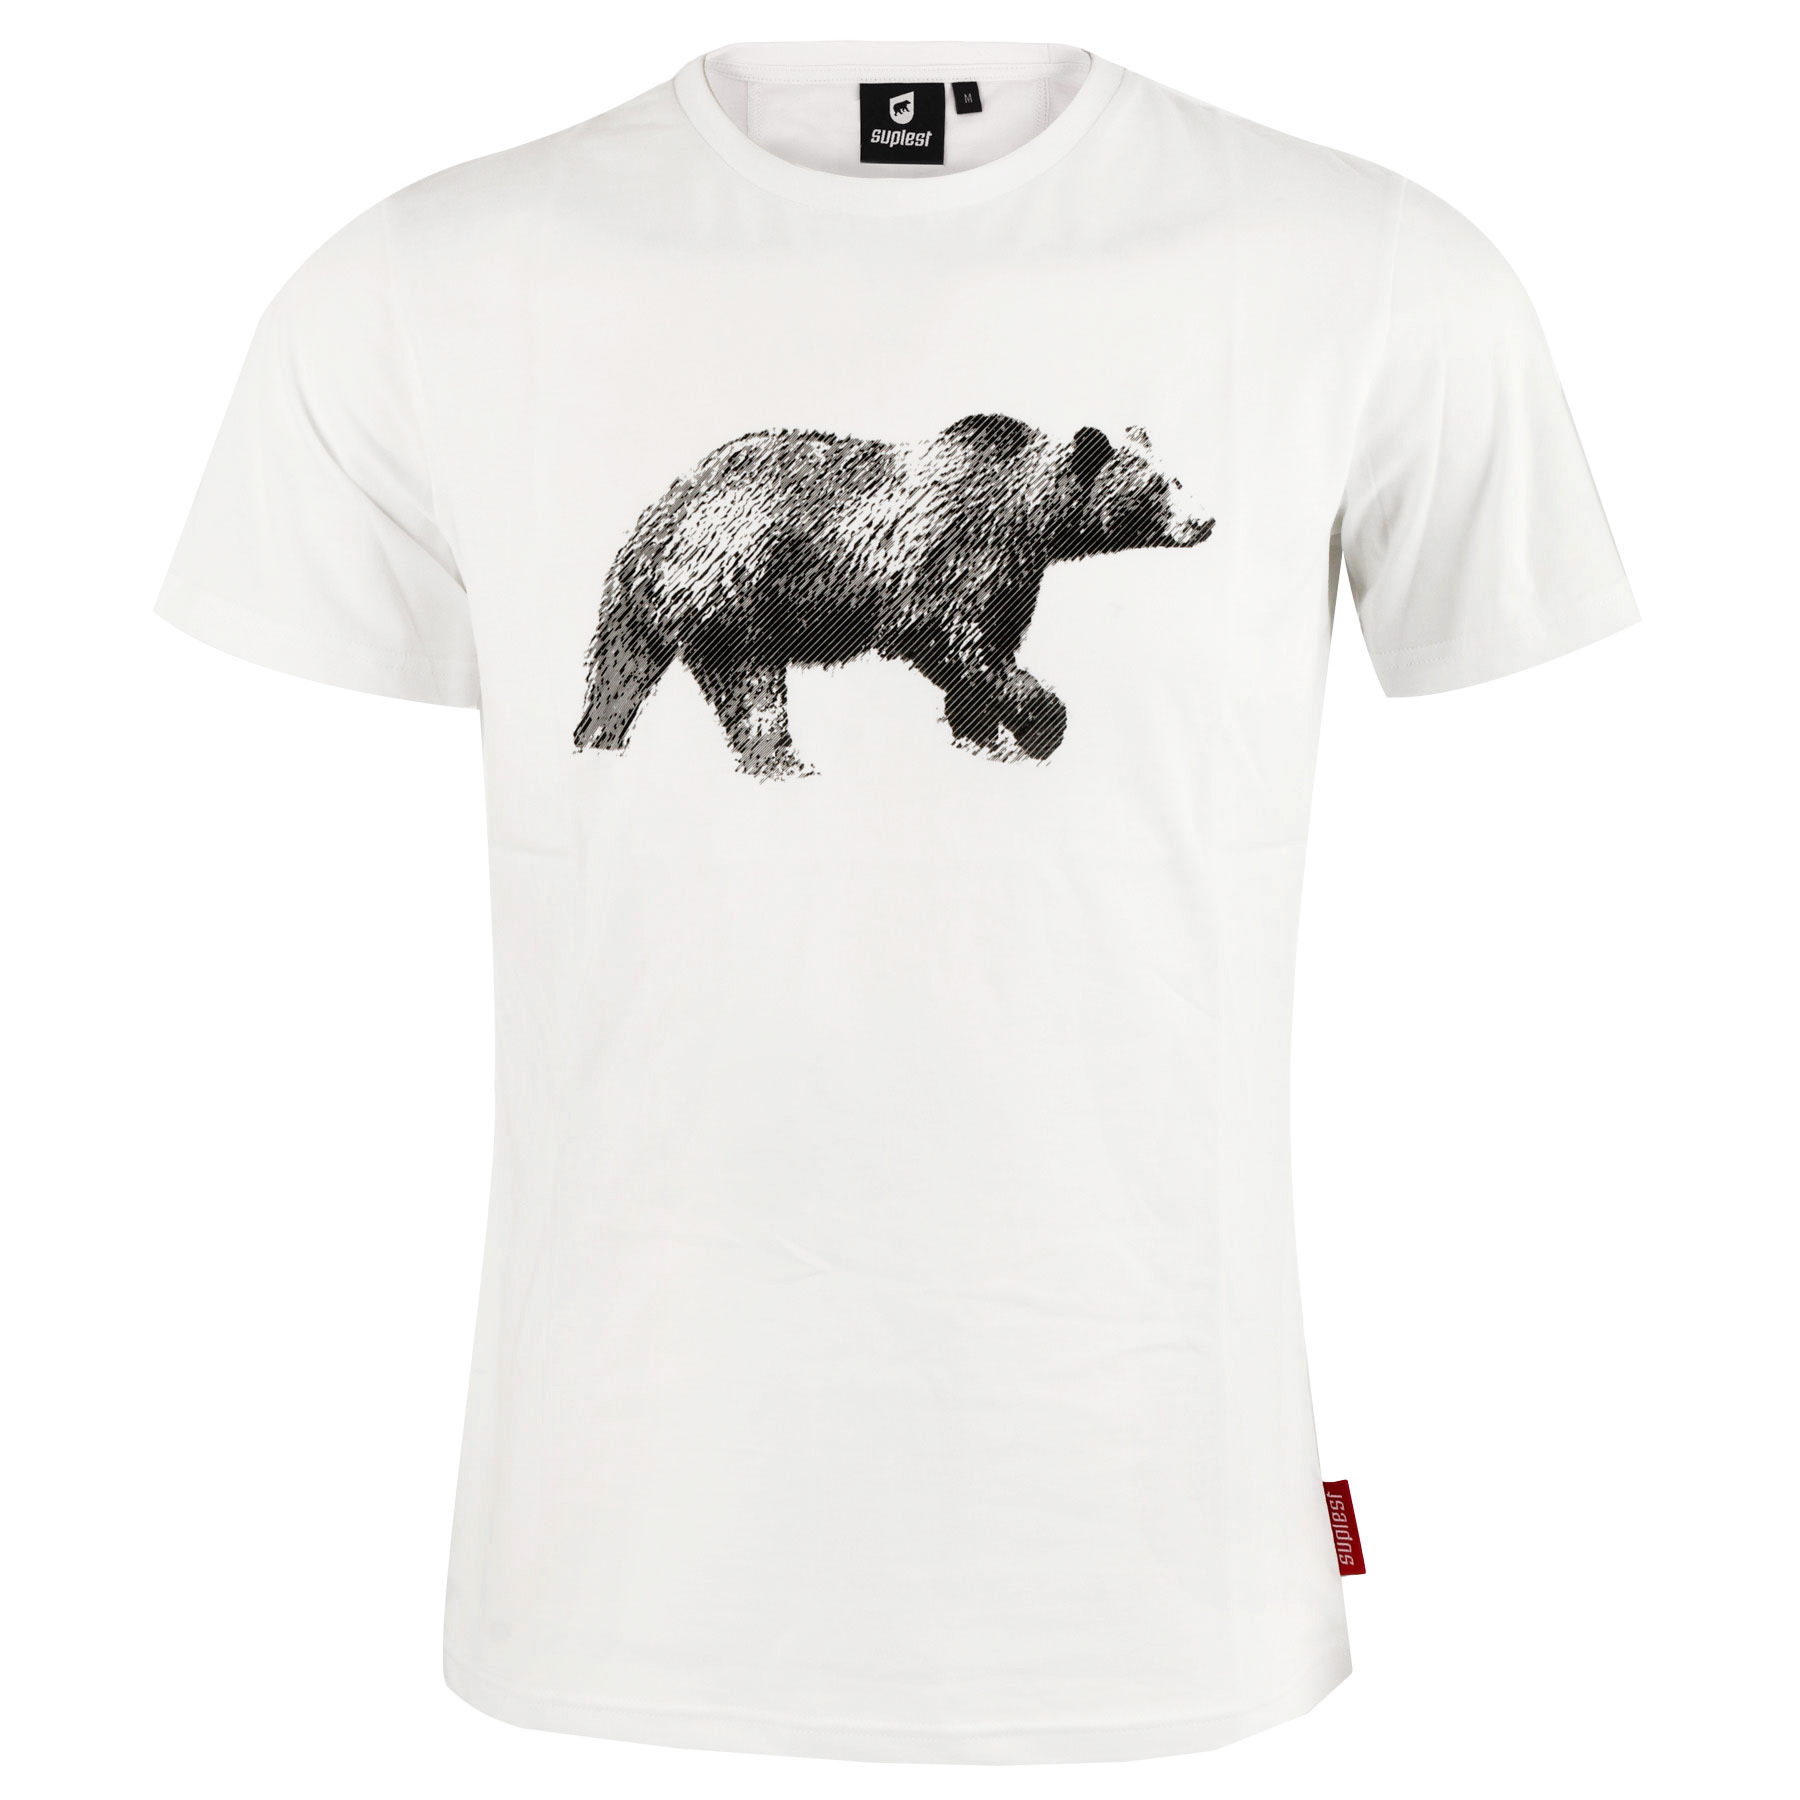 Produktbild von Suplest Bear T-Shirt - weiß 05.055.